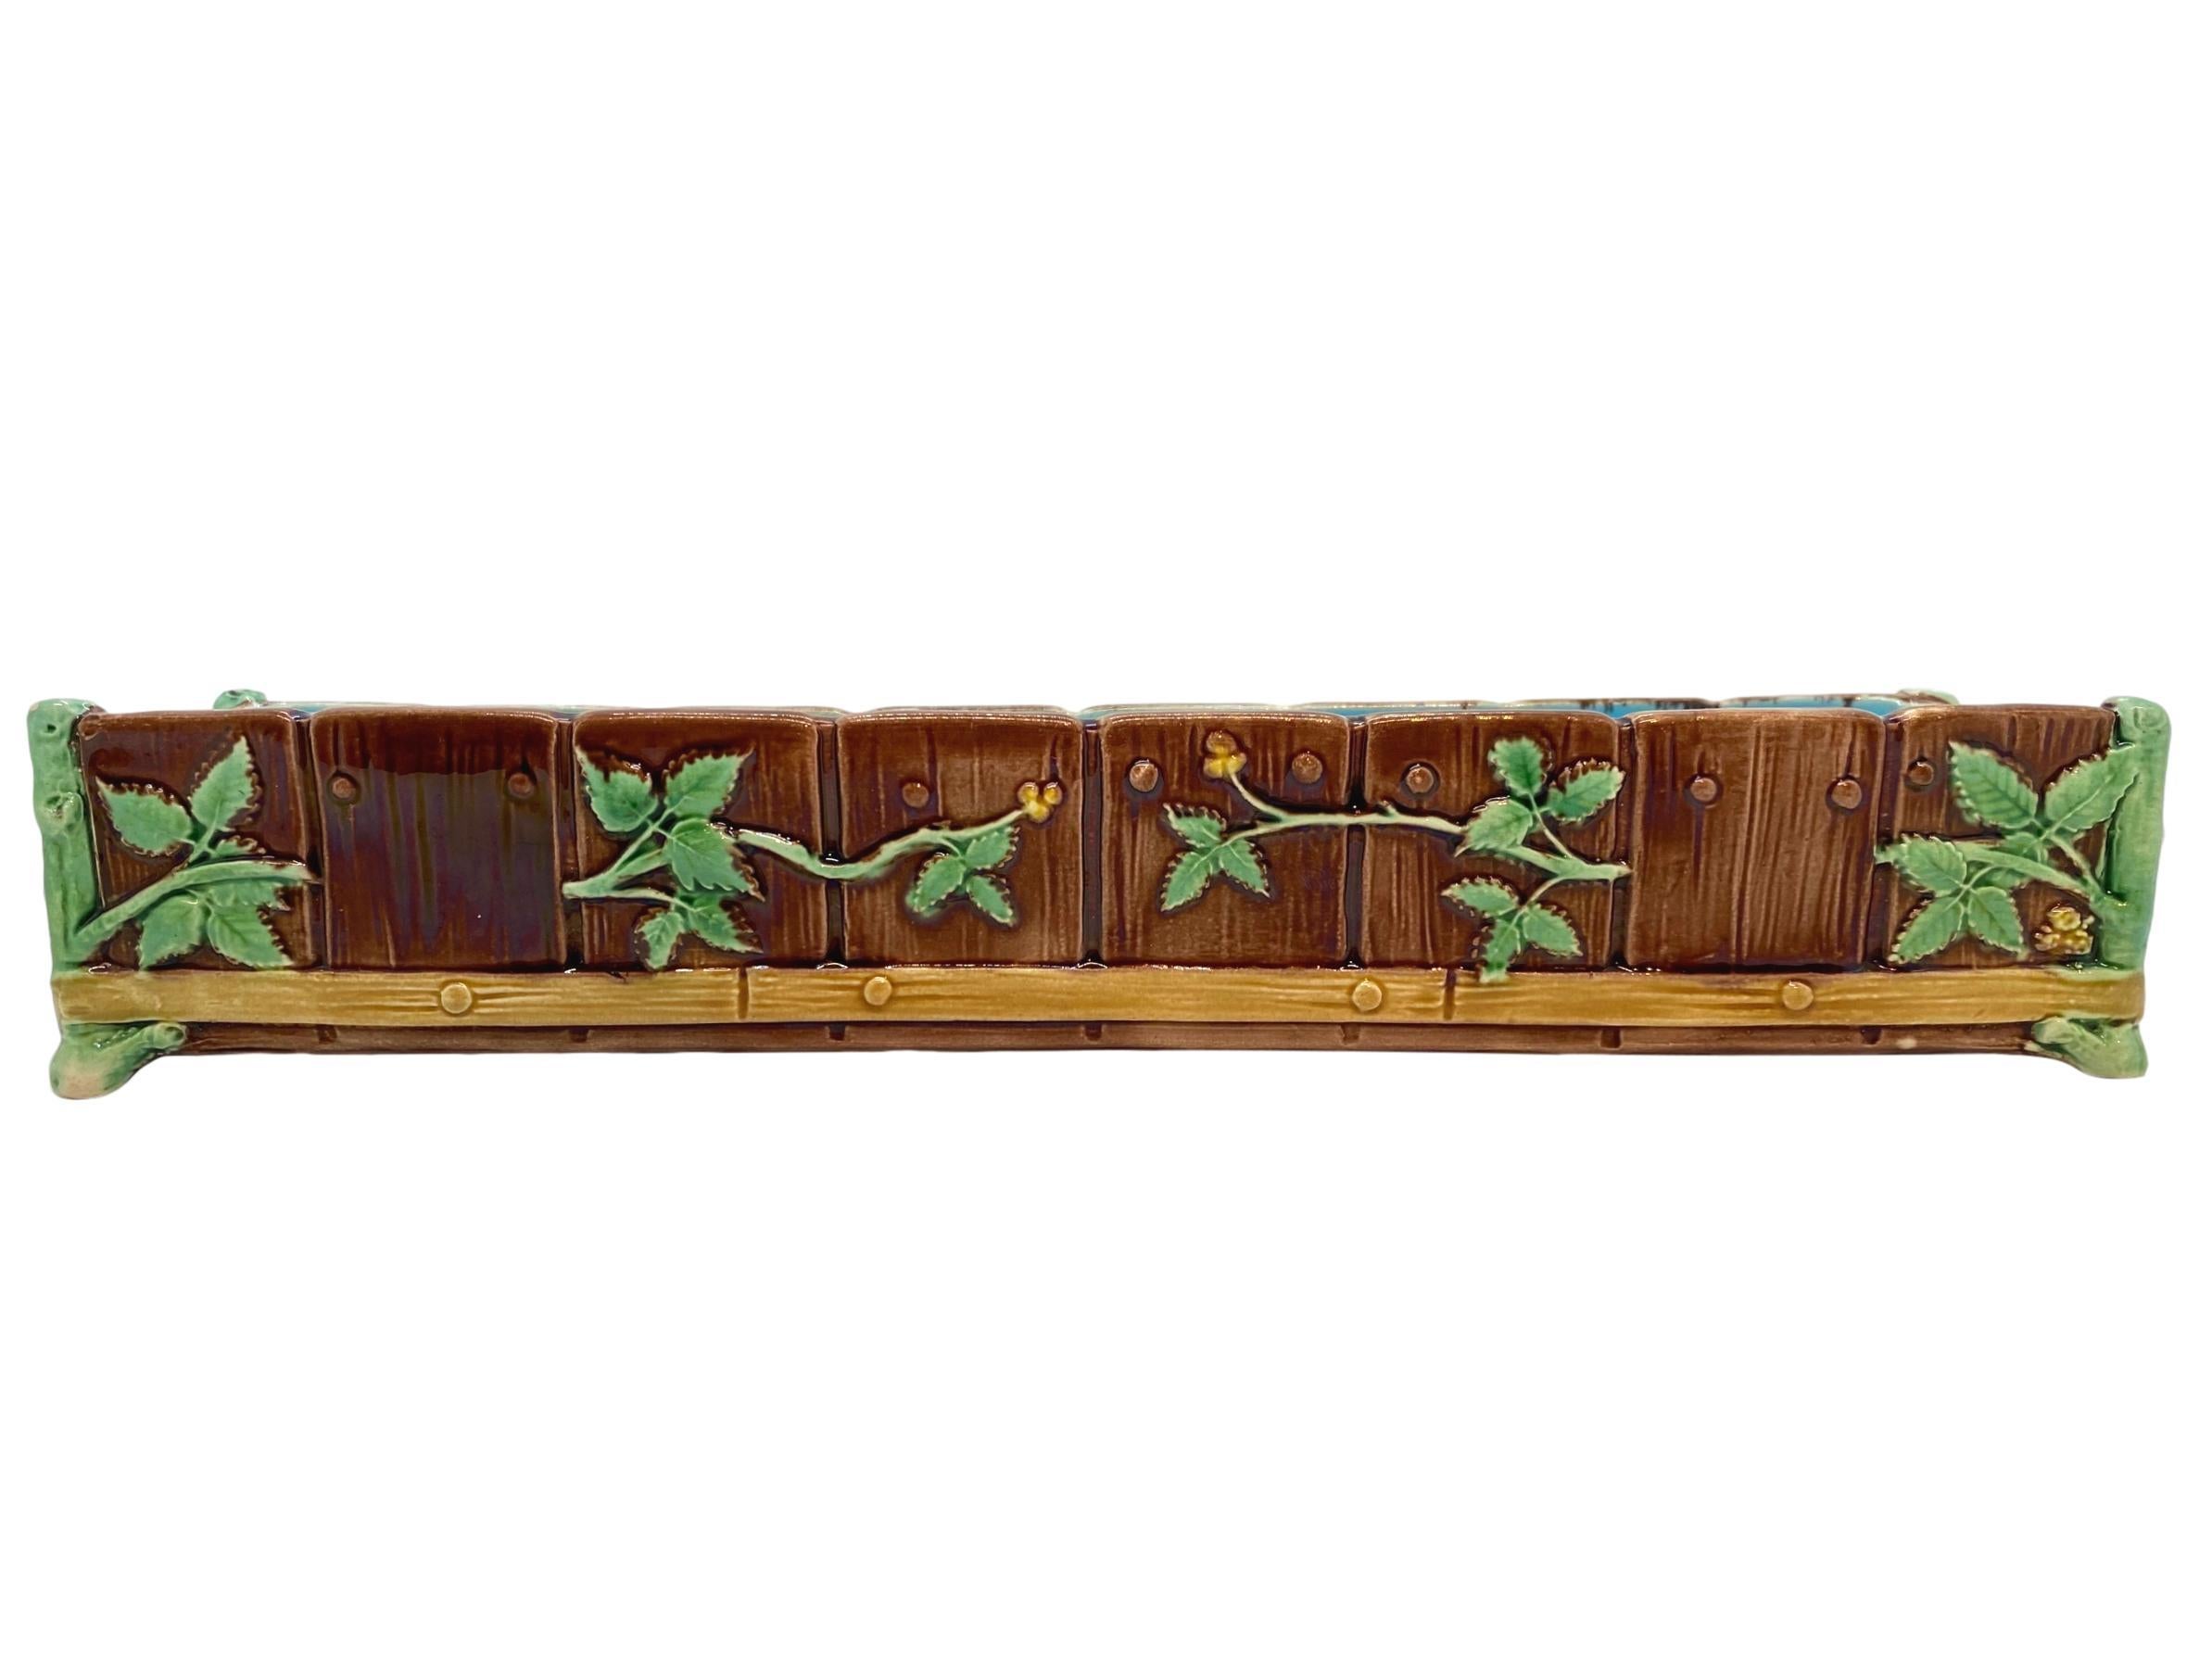 Kleine Jardiniere aus Minton-Majolika, realistisch geformt als simulierter Wassertrog, bestehend aus falschen Holzstäben und -pflöcken, überlagert von knospenden Hawthrone-Zweigen, die Ecken als moosbewachsene Pfosten geformt, in der Nähe des